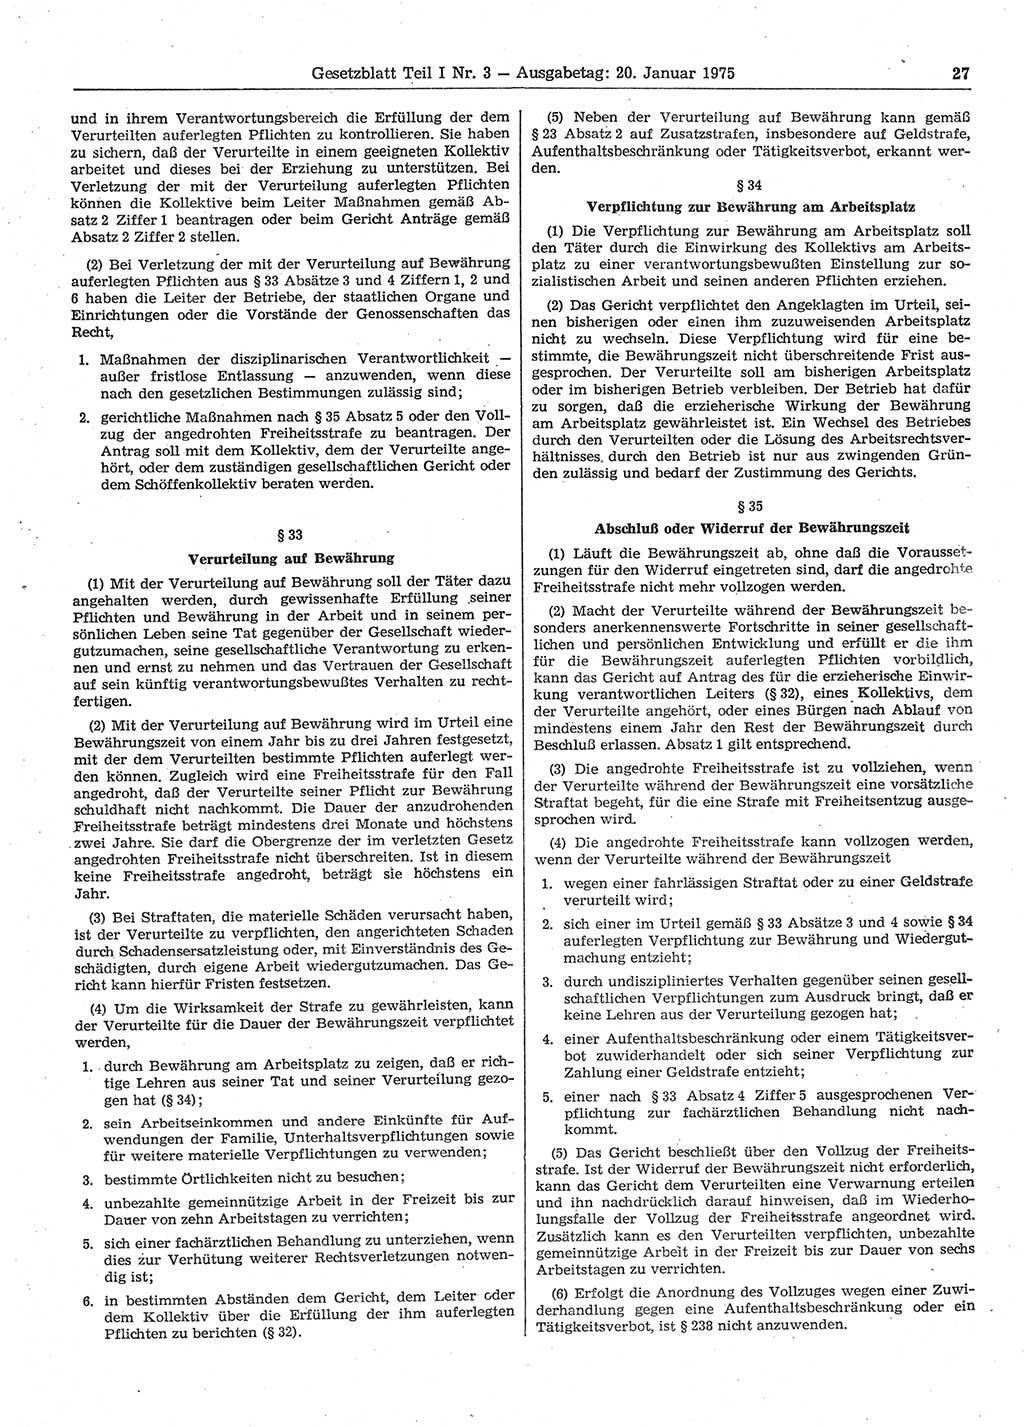 Gesetzblatt (GBl.) der Deutschen Demokratischen Republik (DDR) Teil Ⅰ 1975, Seite 27 (GBl. DDR Ⅰ 1975, S. 27)